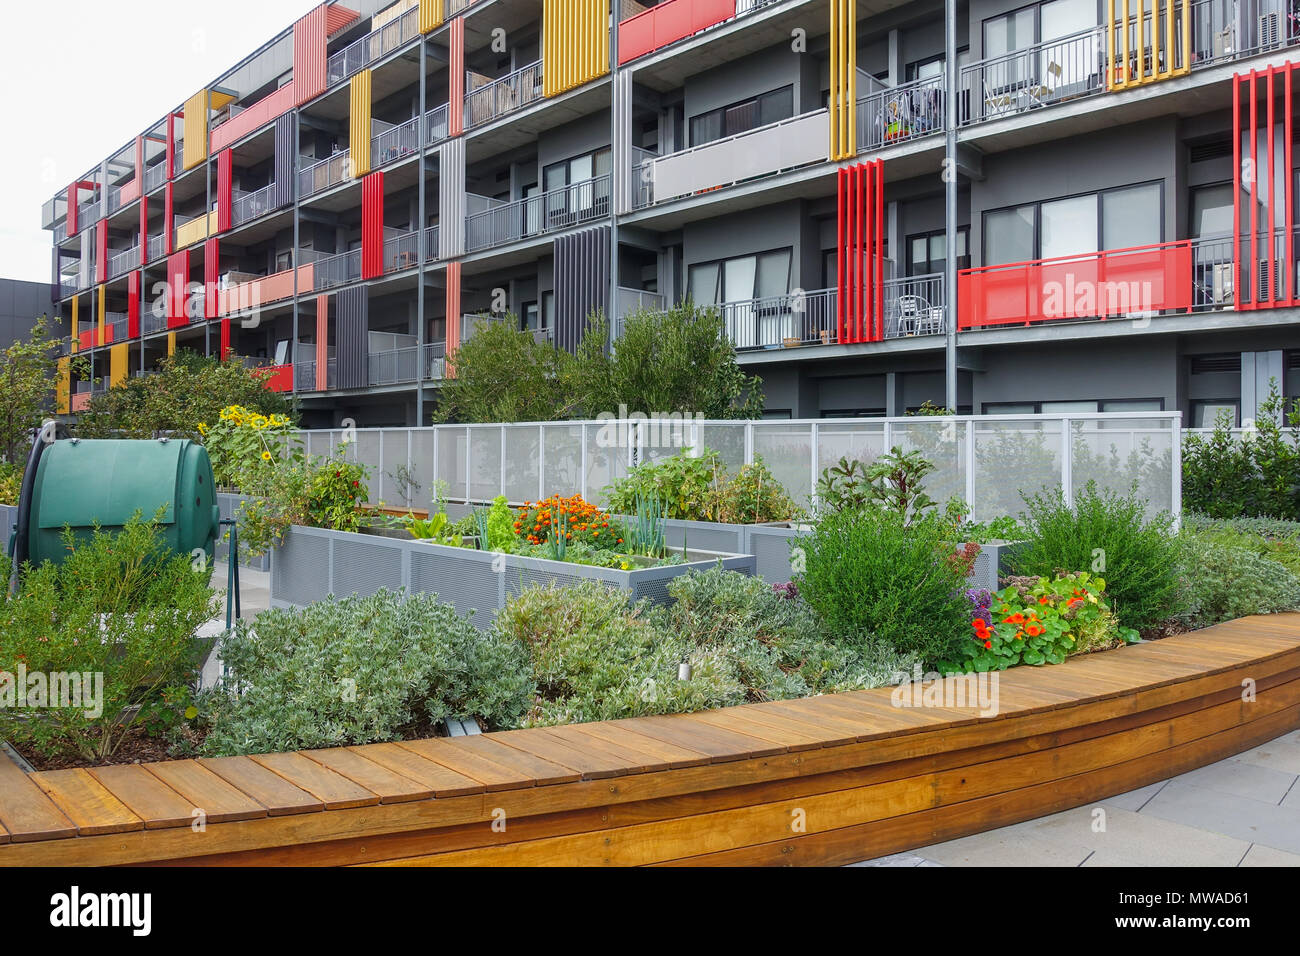 Öffentlicher Garten an der Vorderseite des Wohnapartmentblock. Grüne shared Komposteimer auf der linken Seite. Footscray Plaza, VIC Australien. Stockfoto